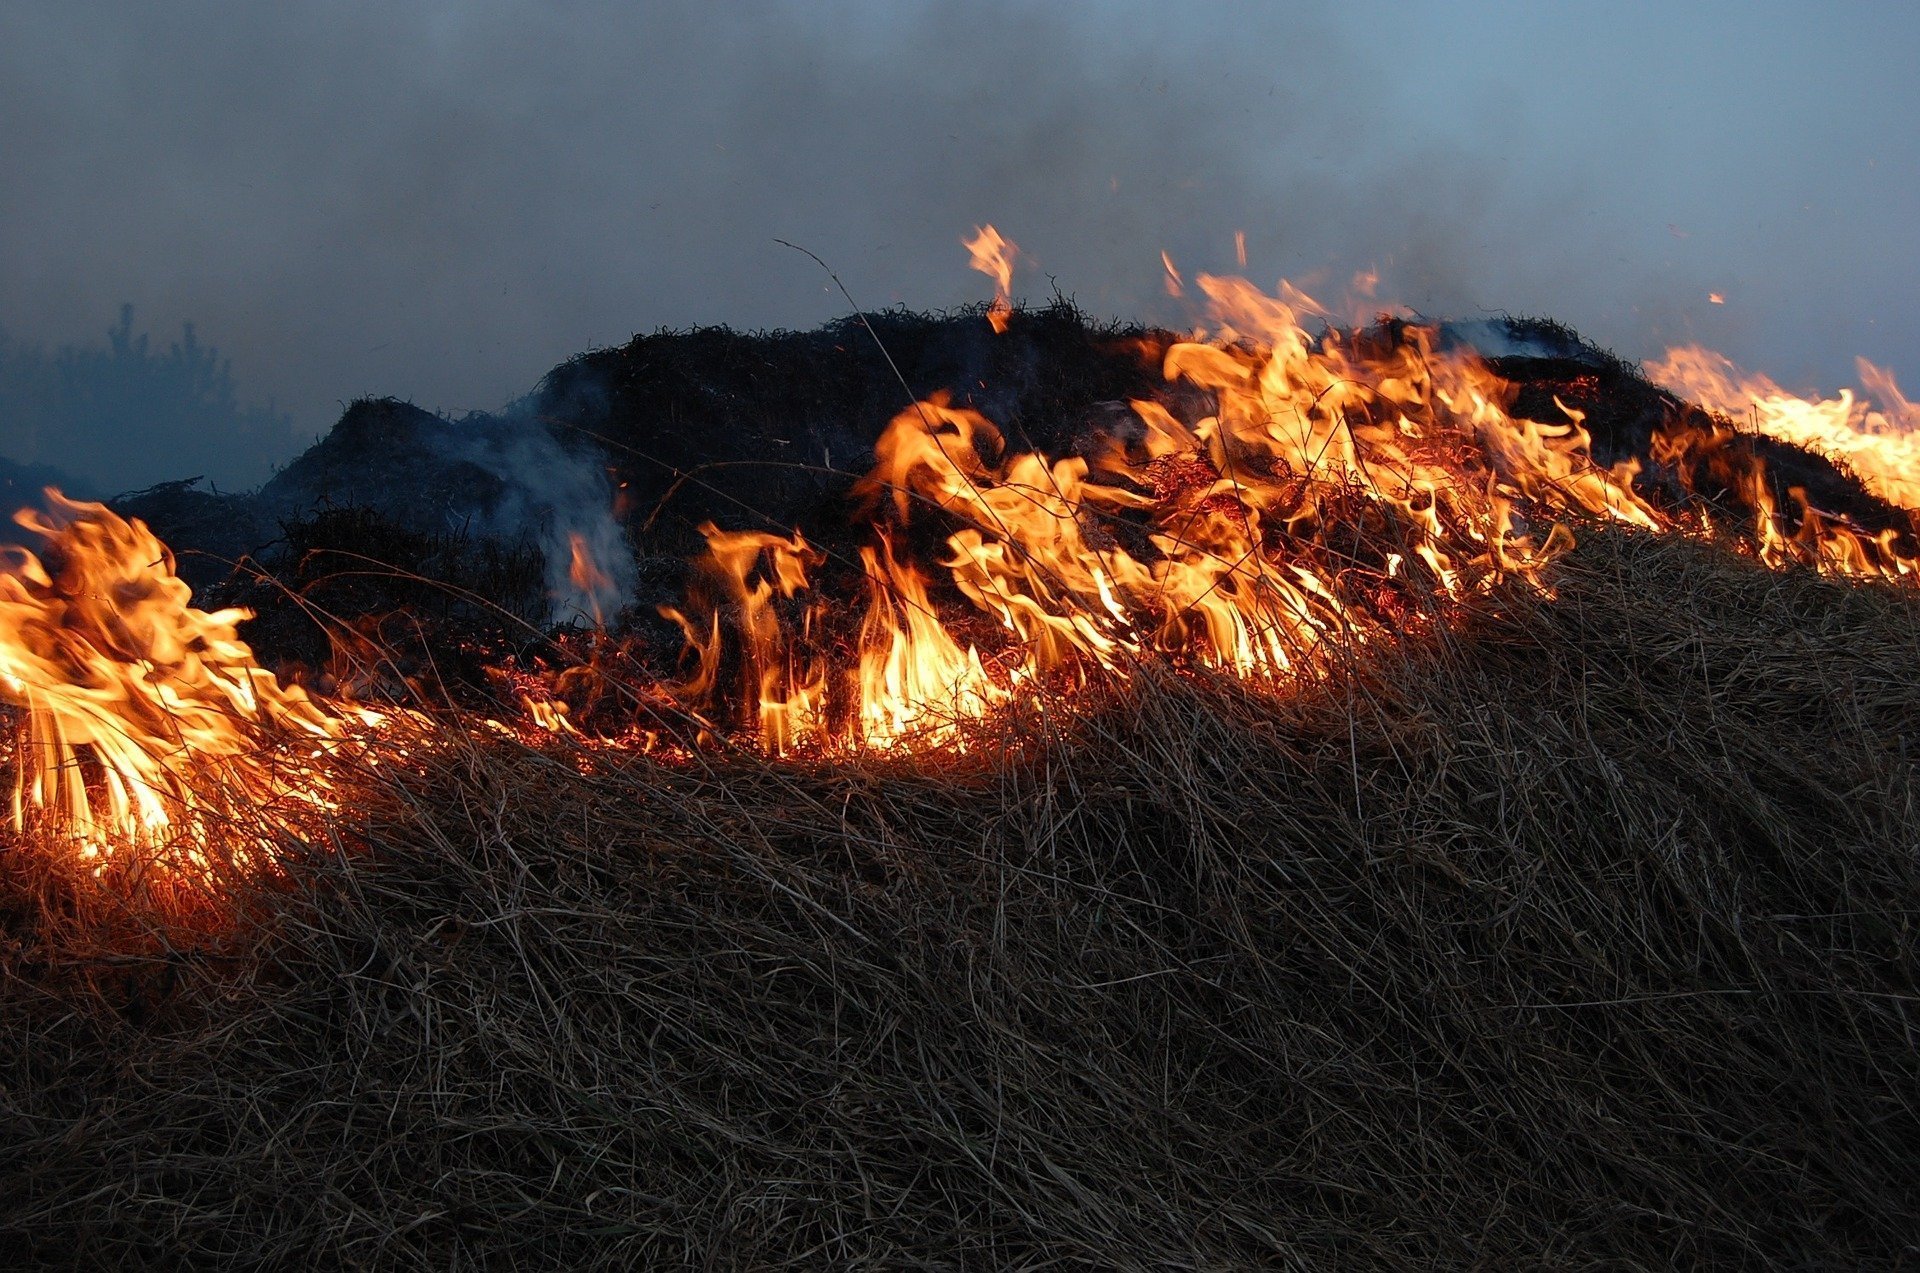 

В Удмуртии произошло более 60 природных пожаров

